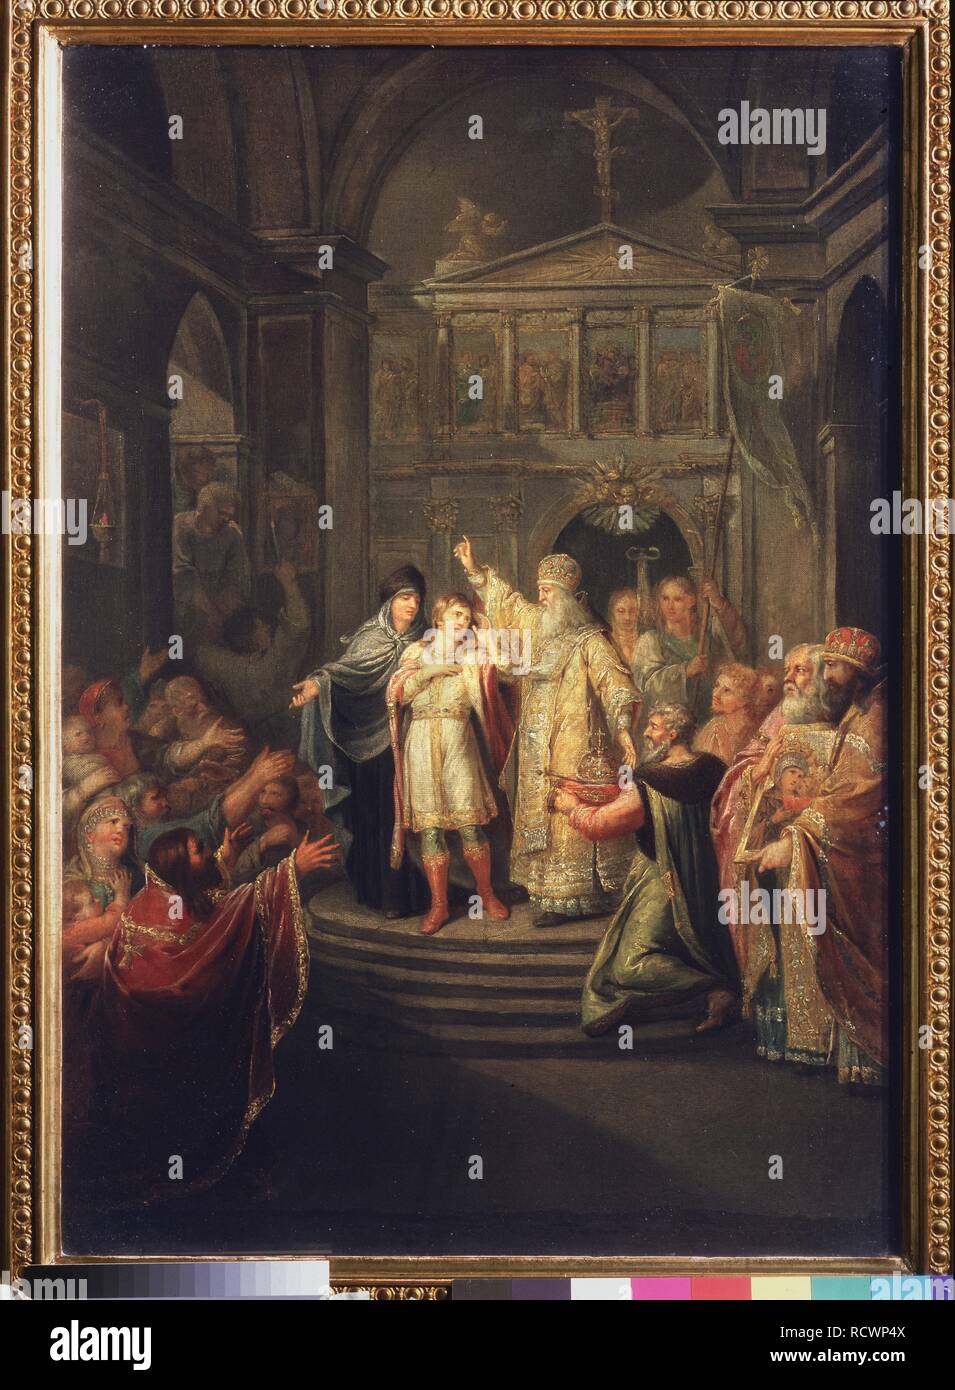 L'élection de Michail Romanov au Tsar le 14 mars 1613. Musée : la Galerie nationale Tretiakov (Moscou). Auteur : Ugryumov, Grigori Ivanovitch. Banque D'Images